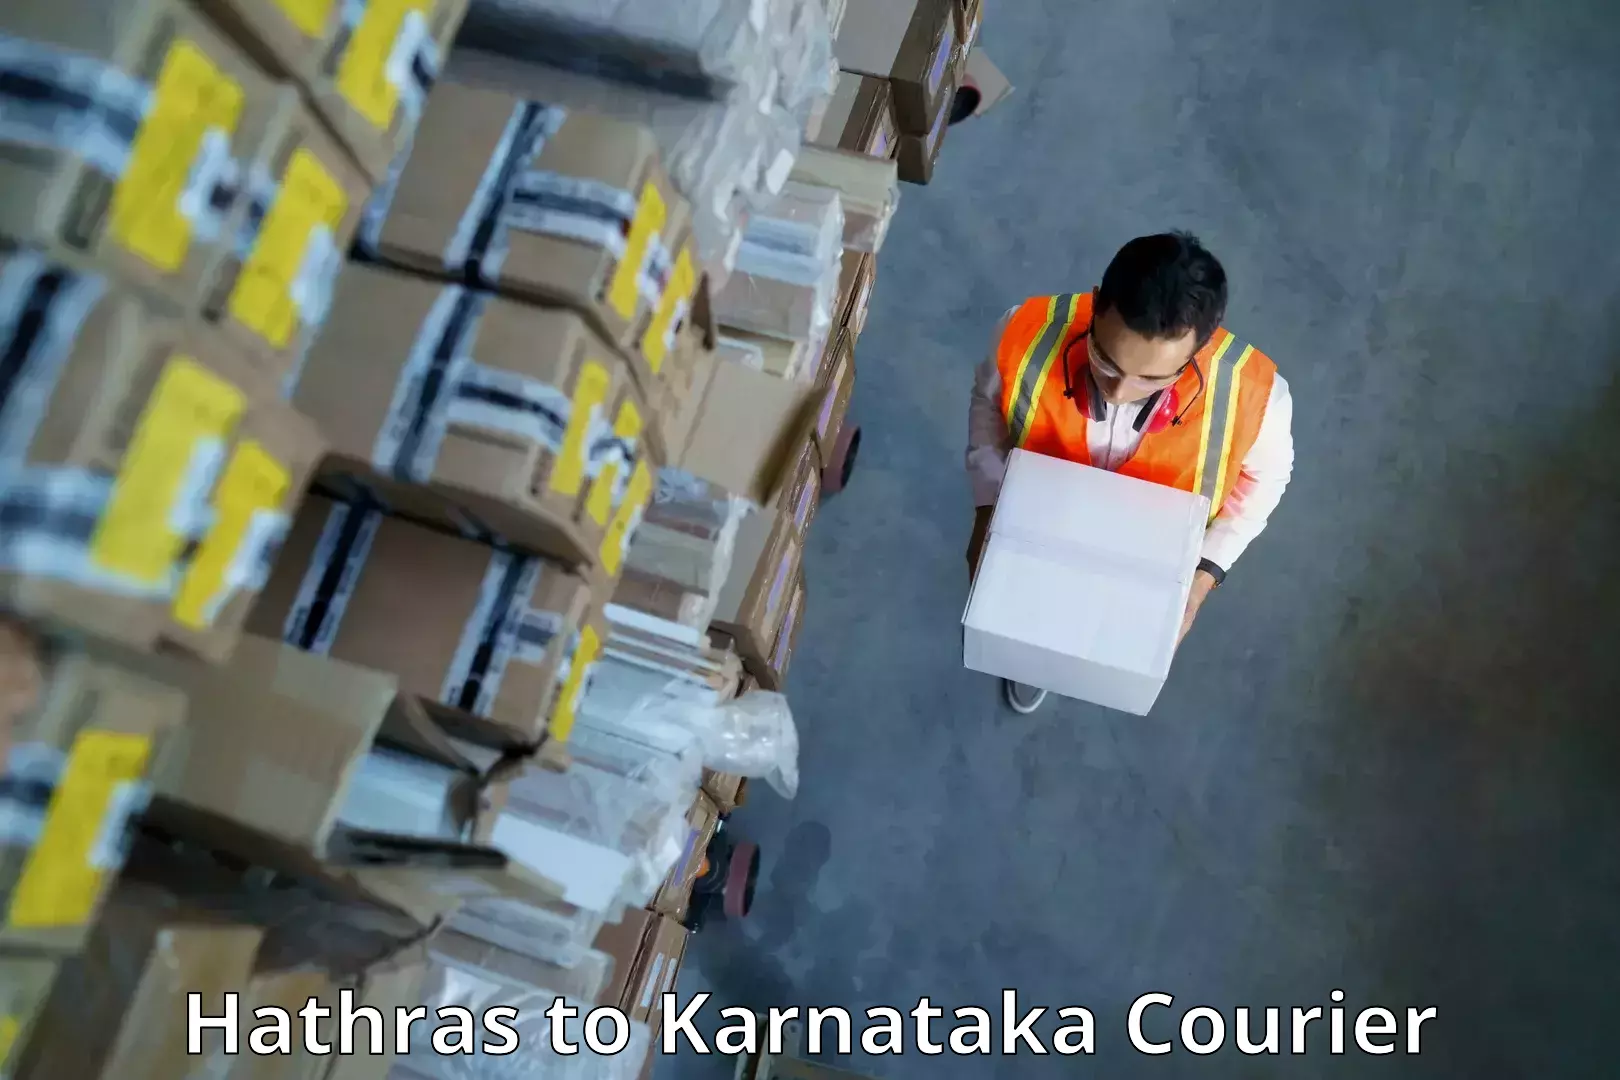 Global parcel delivery Hathras to Karnataka